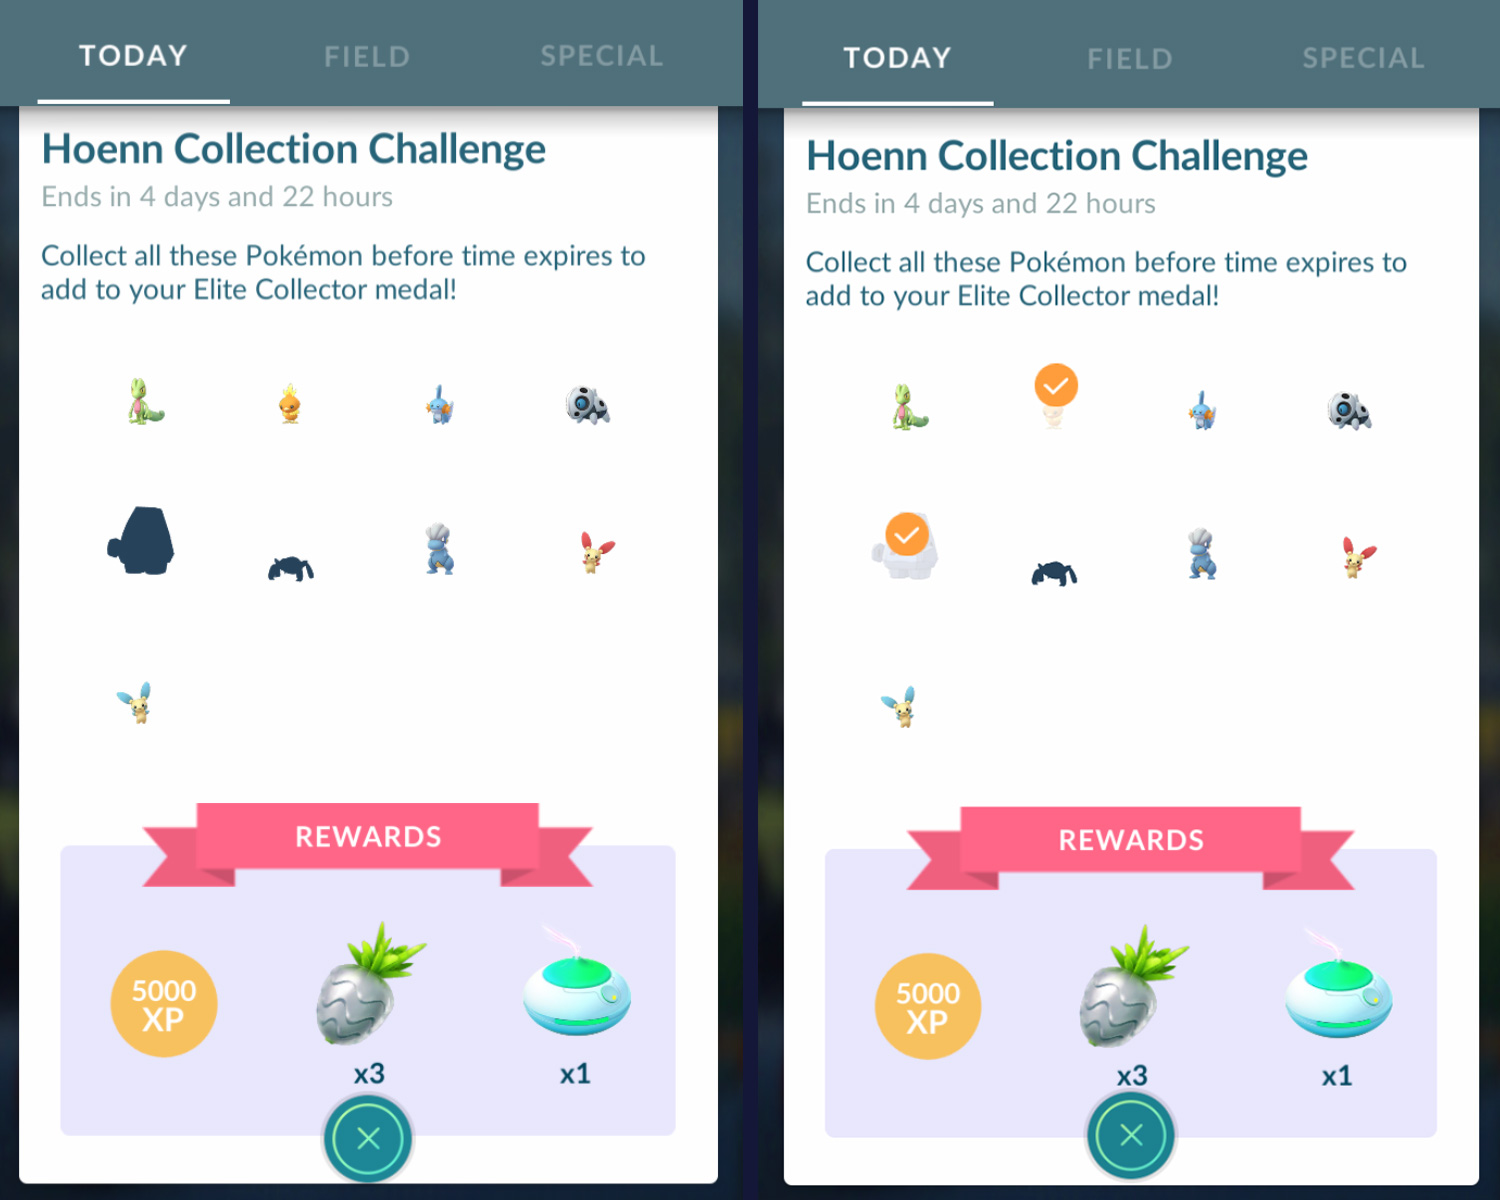 Comment relever le défi de la collection Hoenn dans Pokemon GO